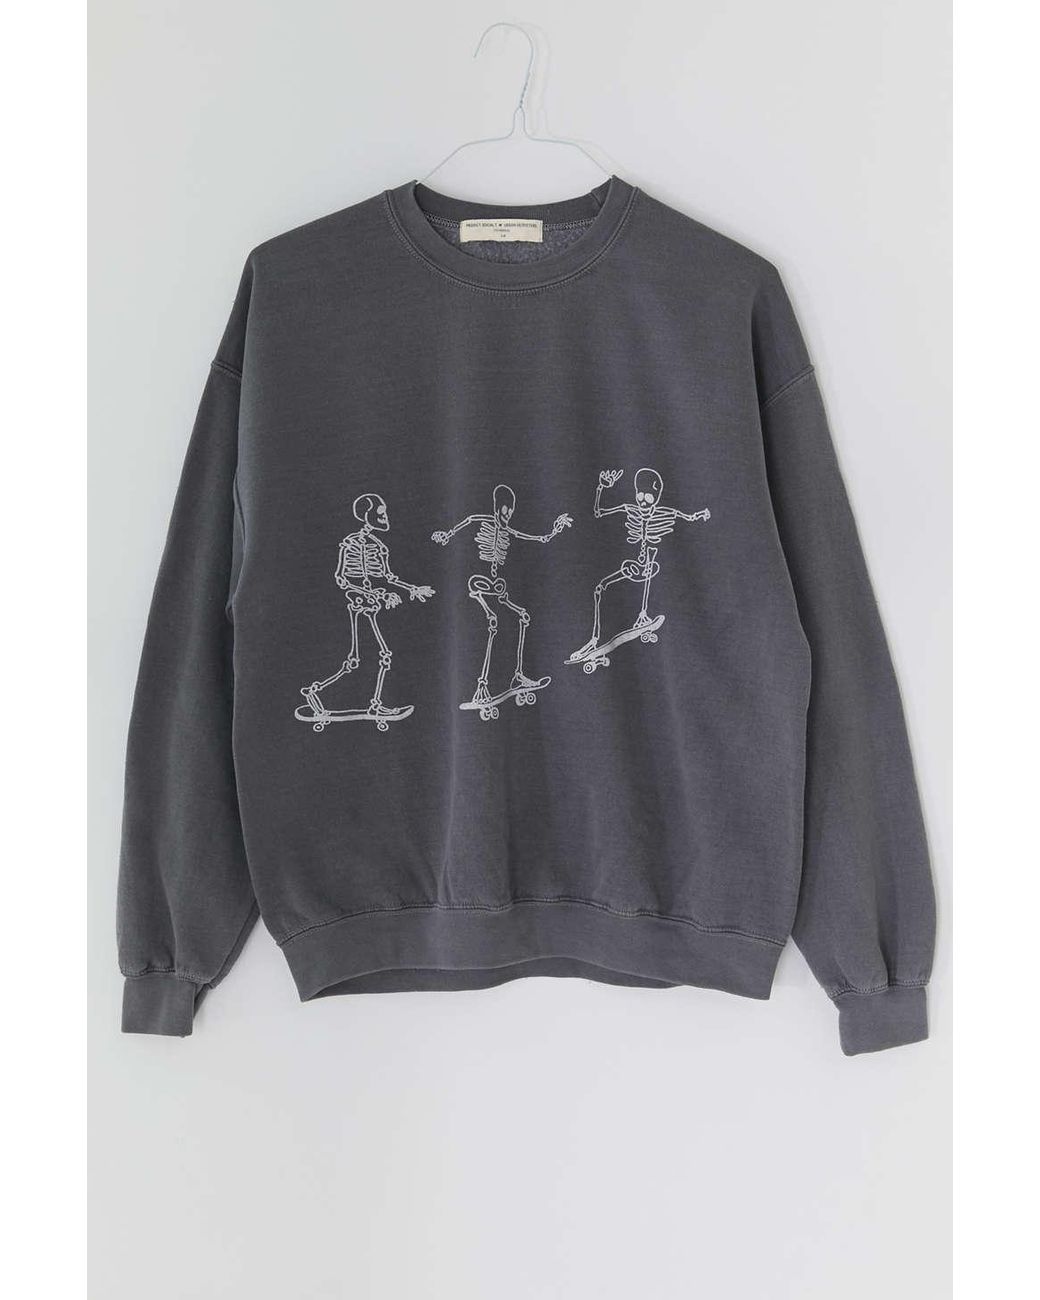 Project Social T Cotton Skateboard Skeletons Sweatshirt in Black (Gray) -  Lyst